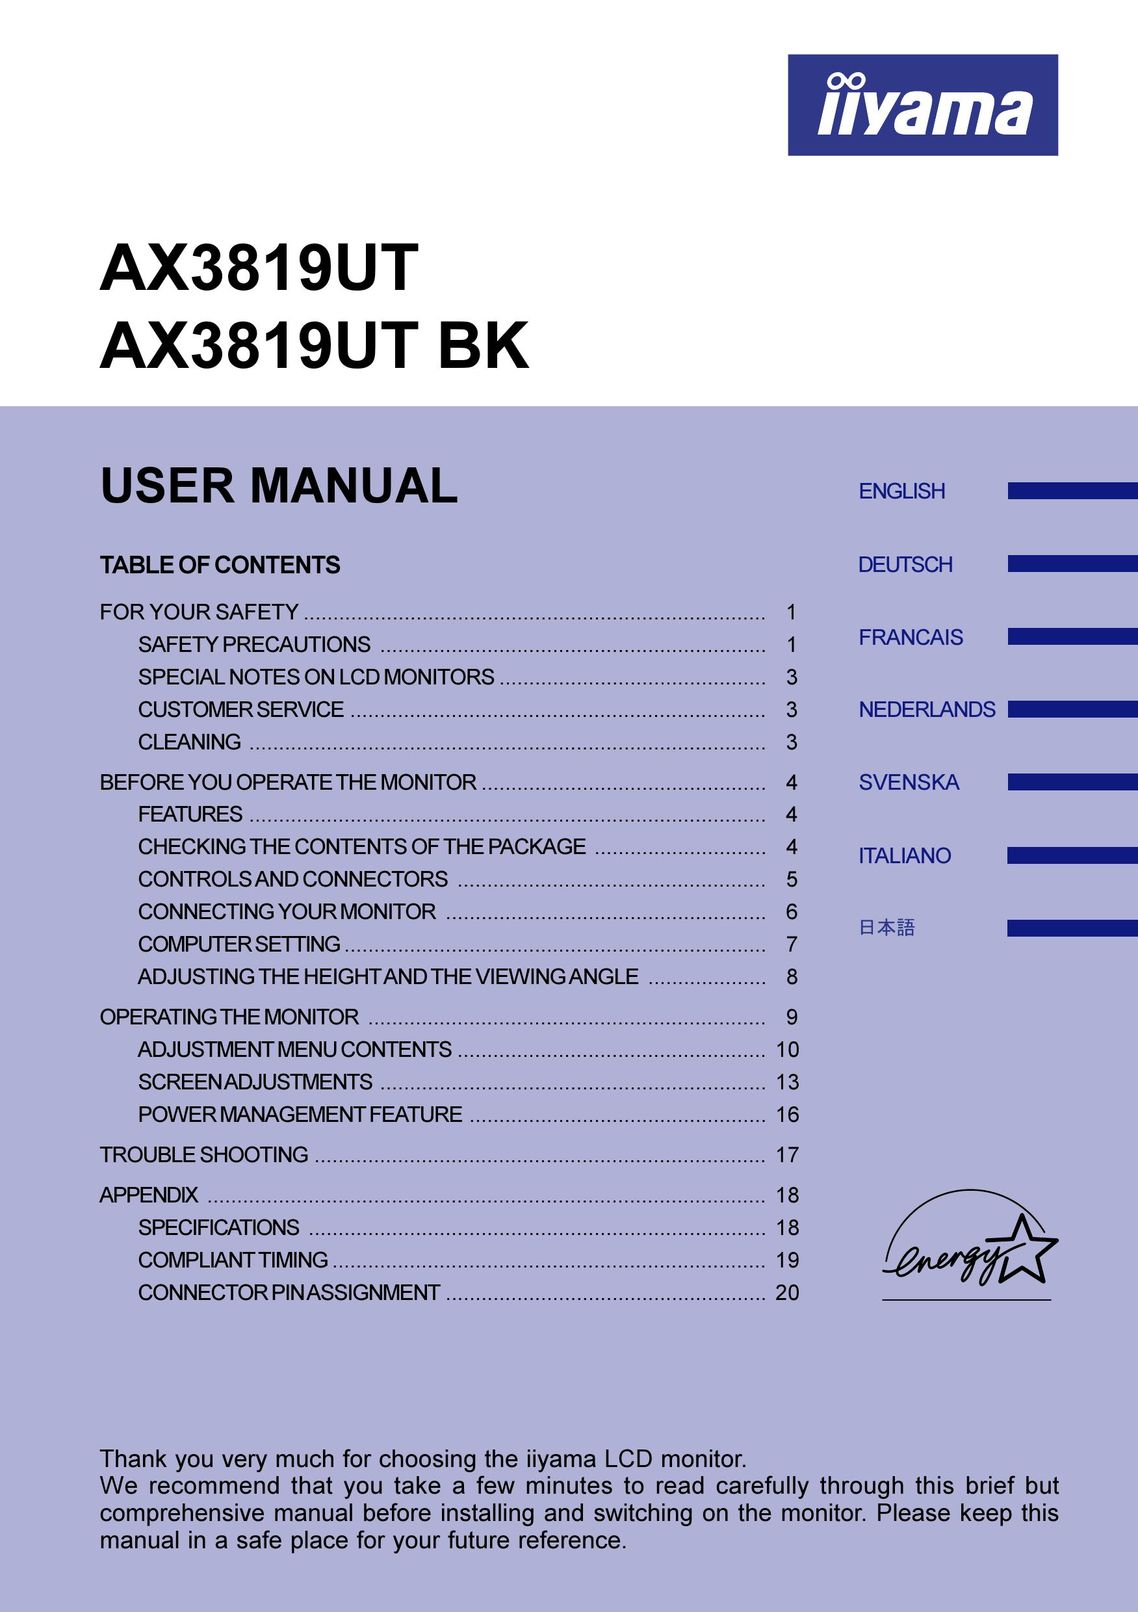 Iiyama AX3819UT Computer Monitor User Manual